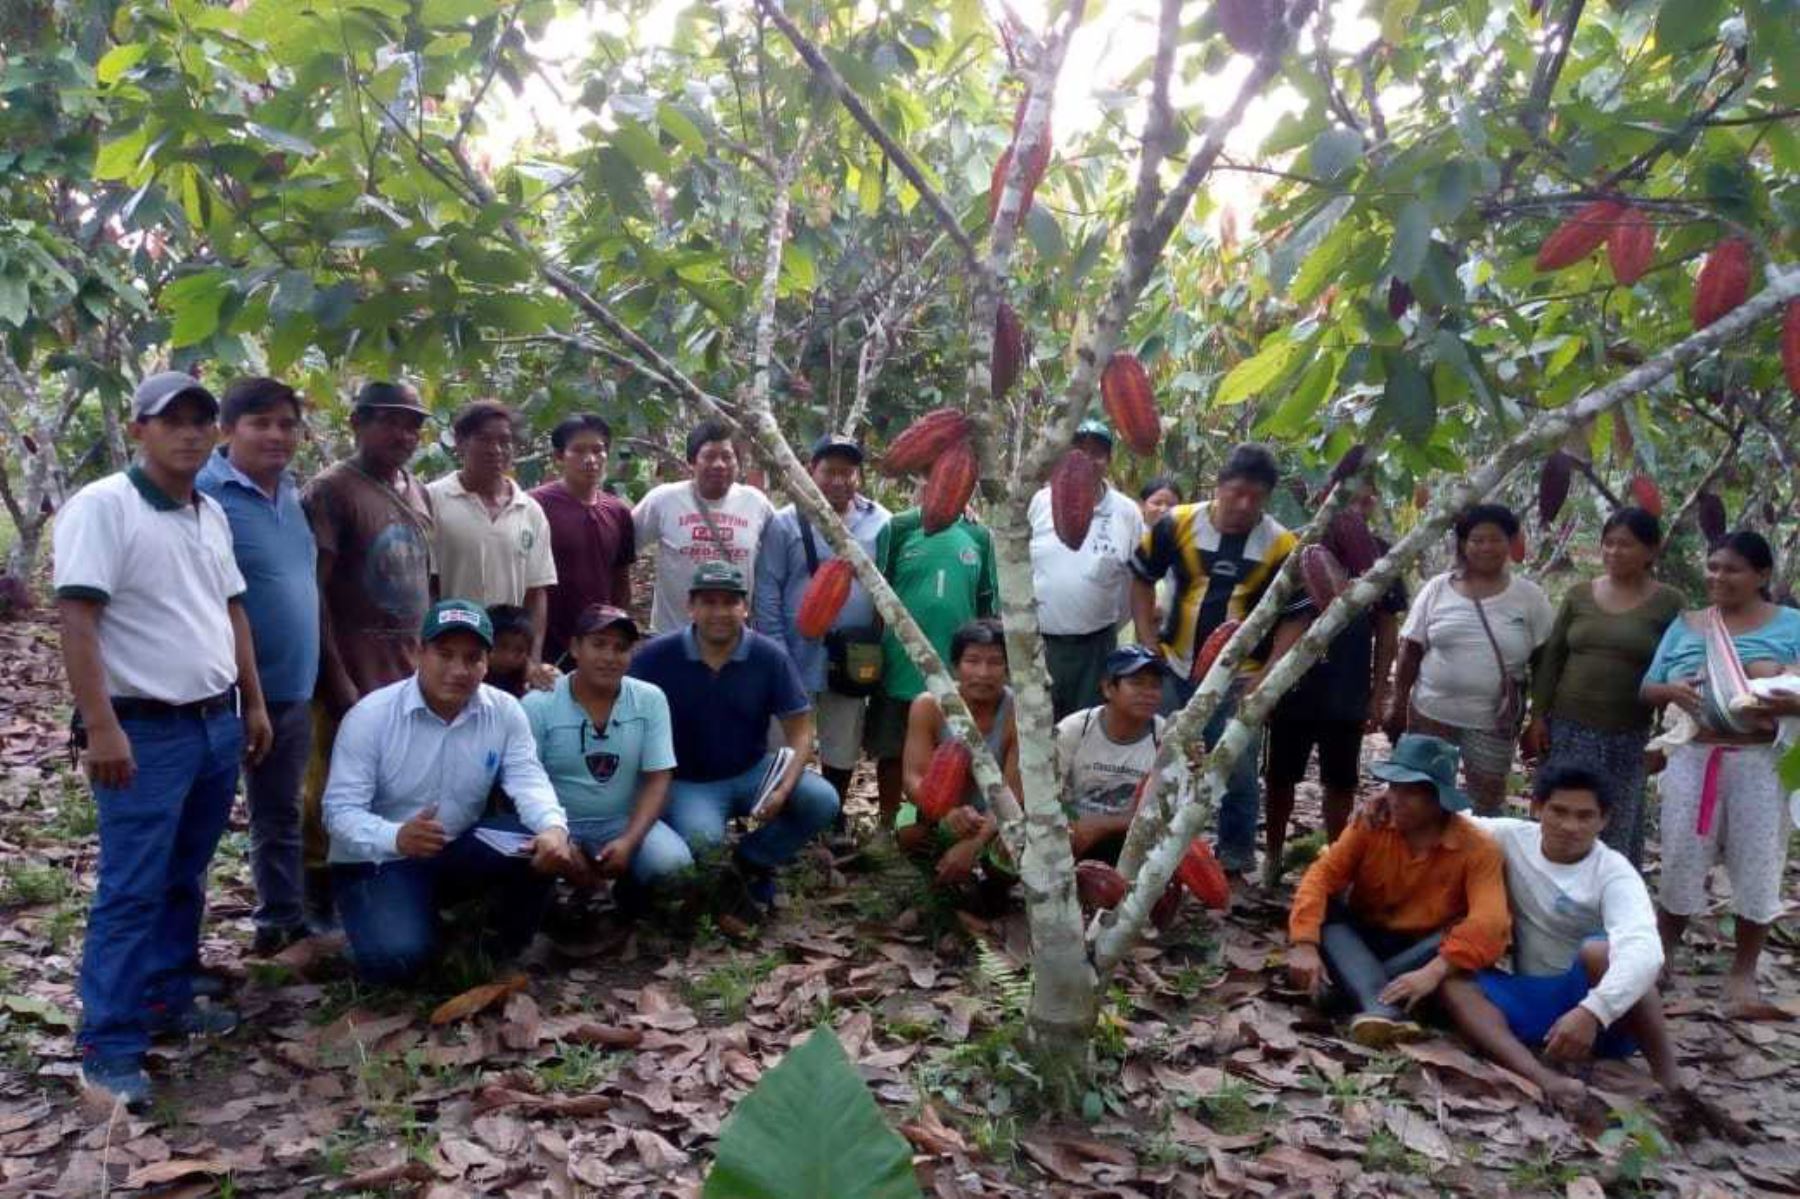 Alrededor de 300 productores ashánincas de 15 comunidades indígenas de la cuenca del río Tambo, provincia de Satipo, región Junín, se benefician actualmente con un proyecto de asistencia técnica en el proceso productivo de cacao orgánico impulsado por el Ministerio de Agricultura y Riego (Minagri).